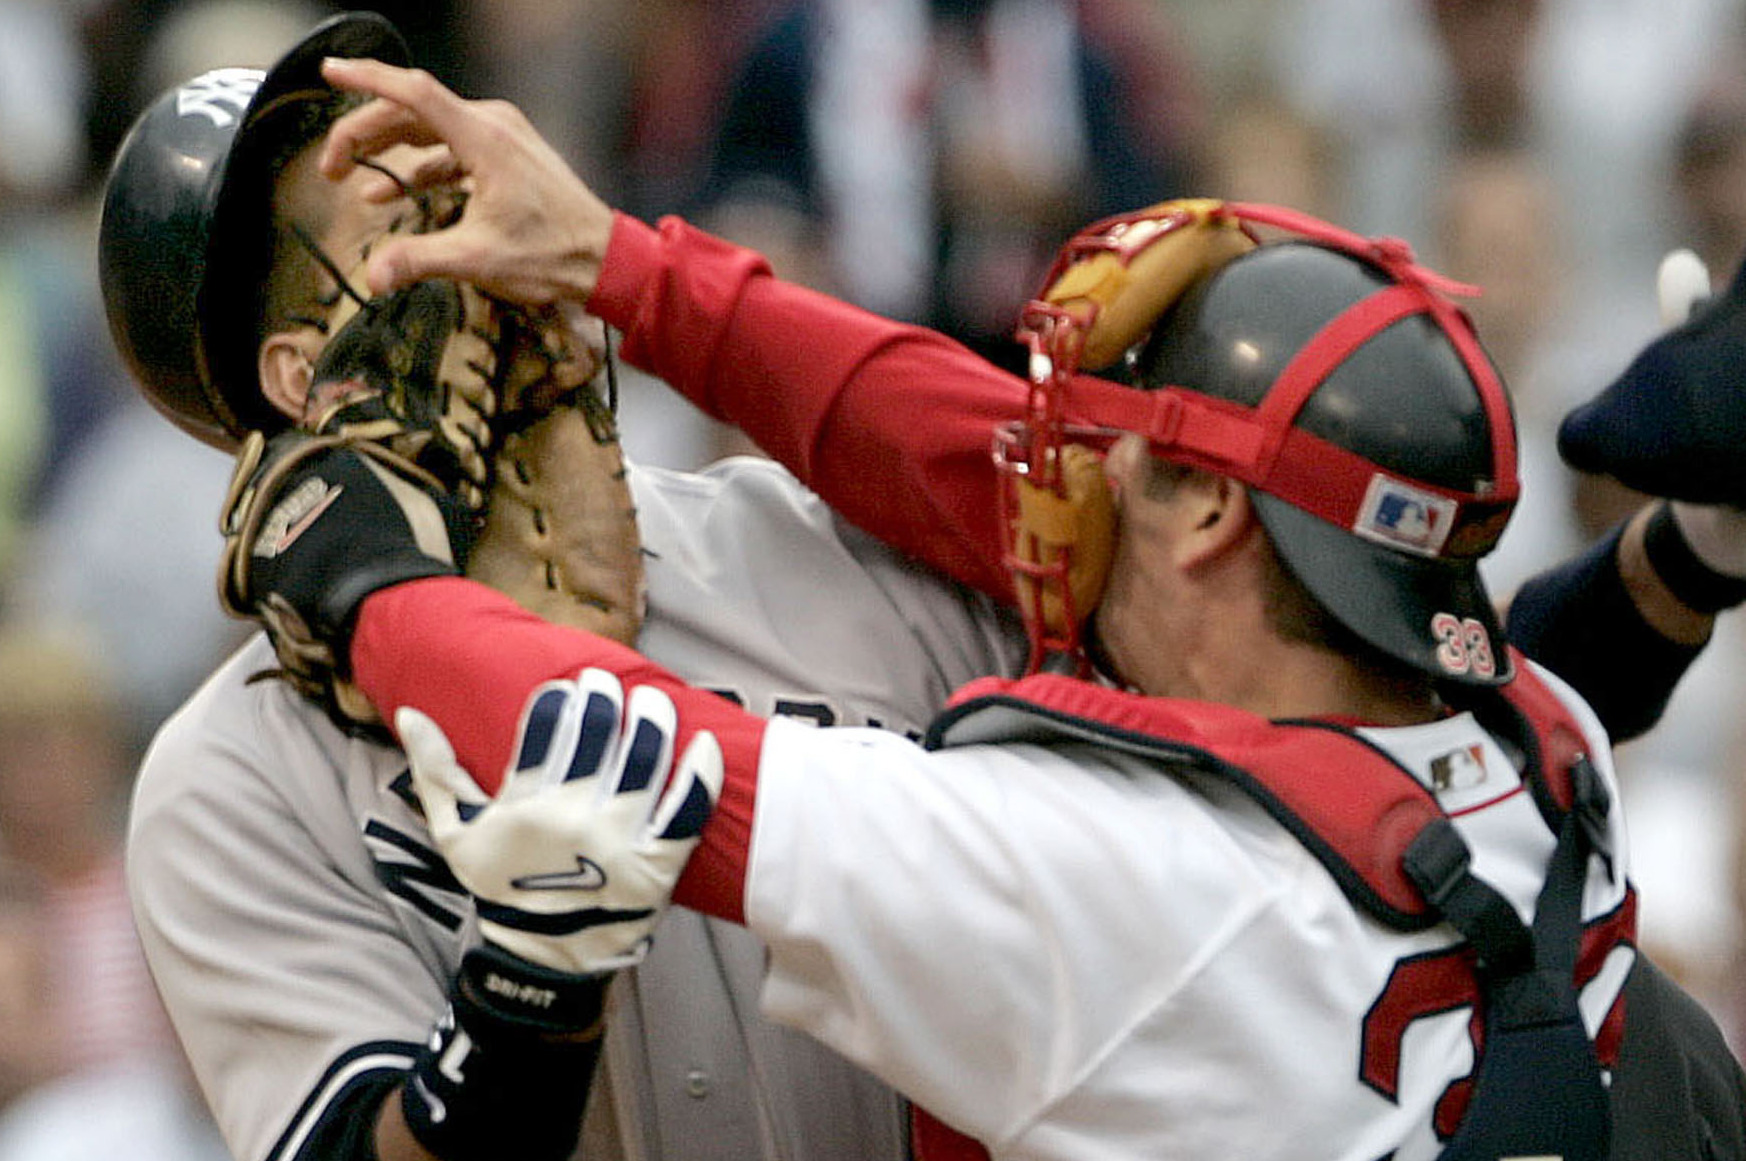 Unfortunate News About Red Sox Legend Jason Varitek – Guy Boston